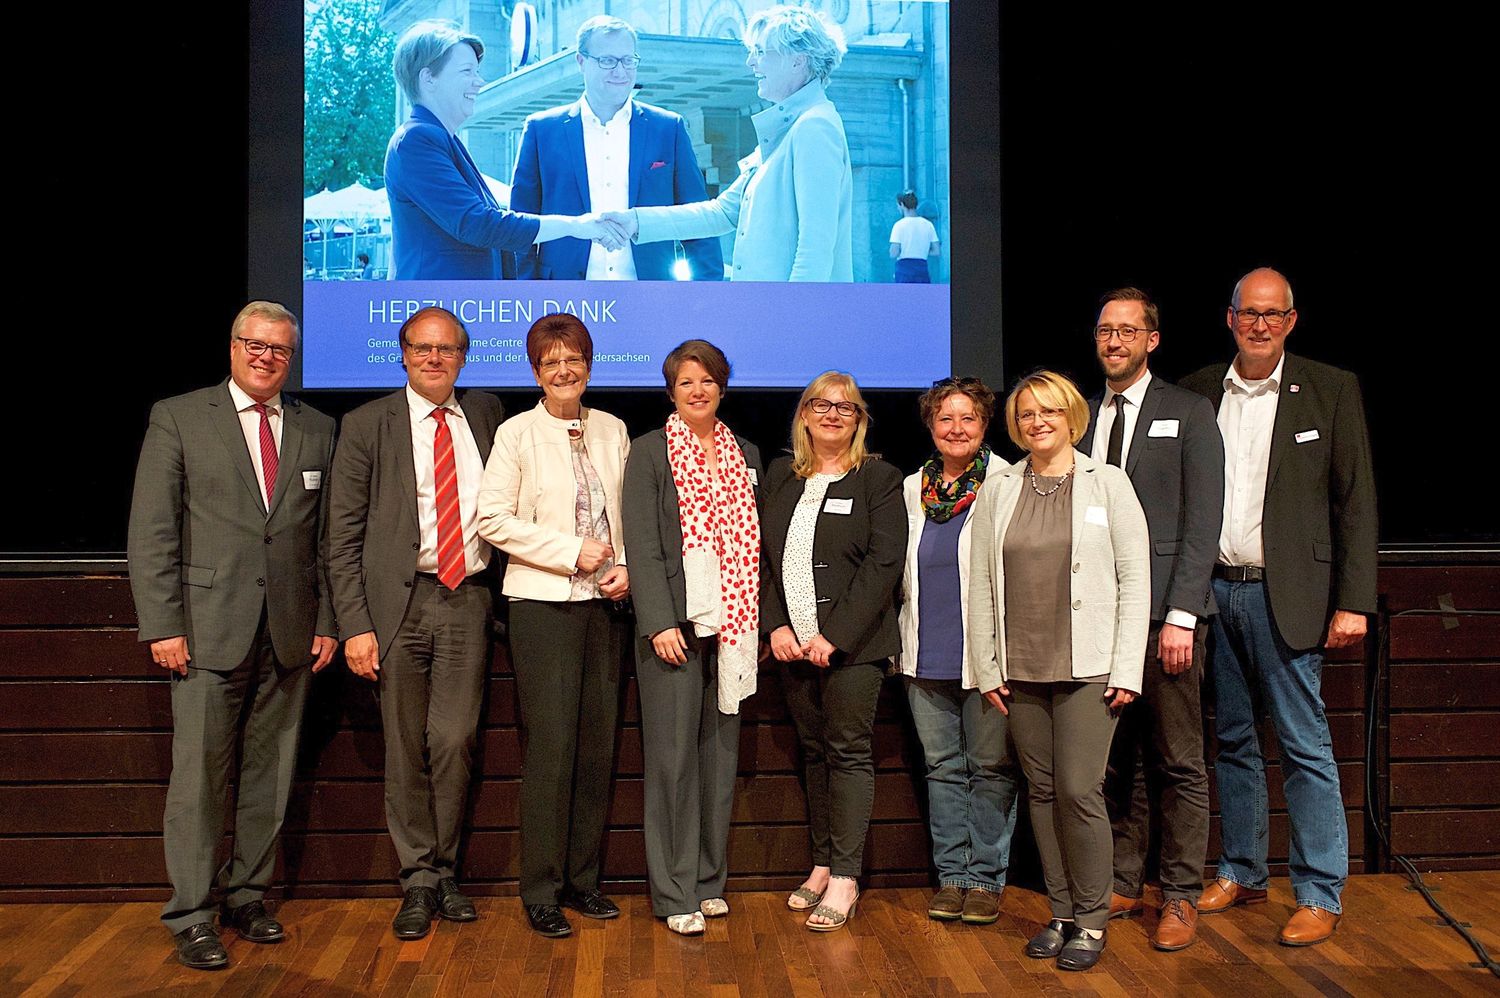 Auf der Veranstaltung stellten sich auch die Leiterinnen und Leiter der Regionalbüros im Landkreis Göttingen vor.